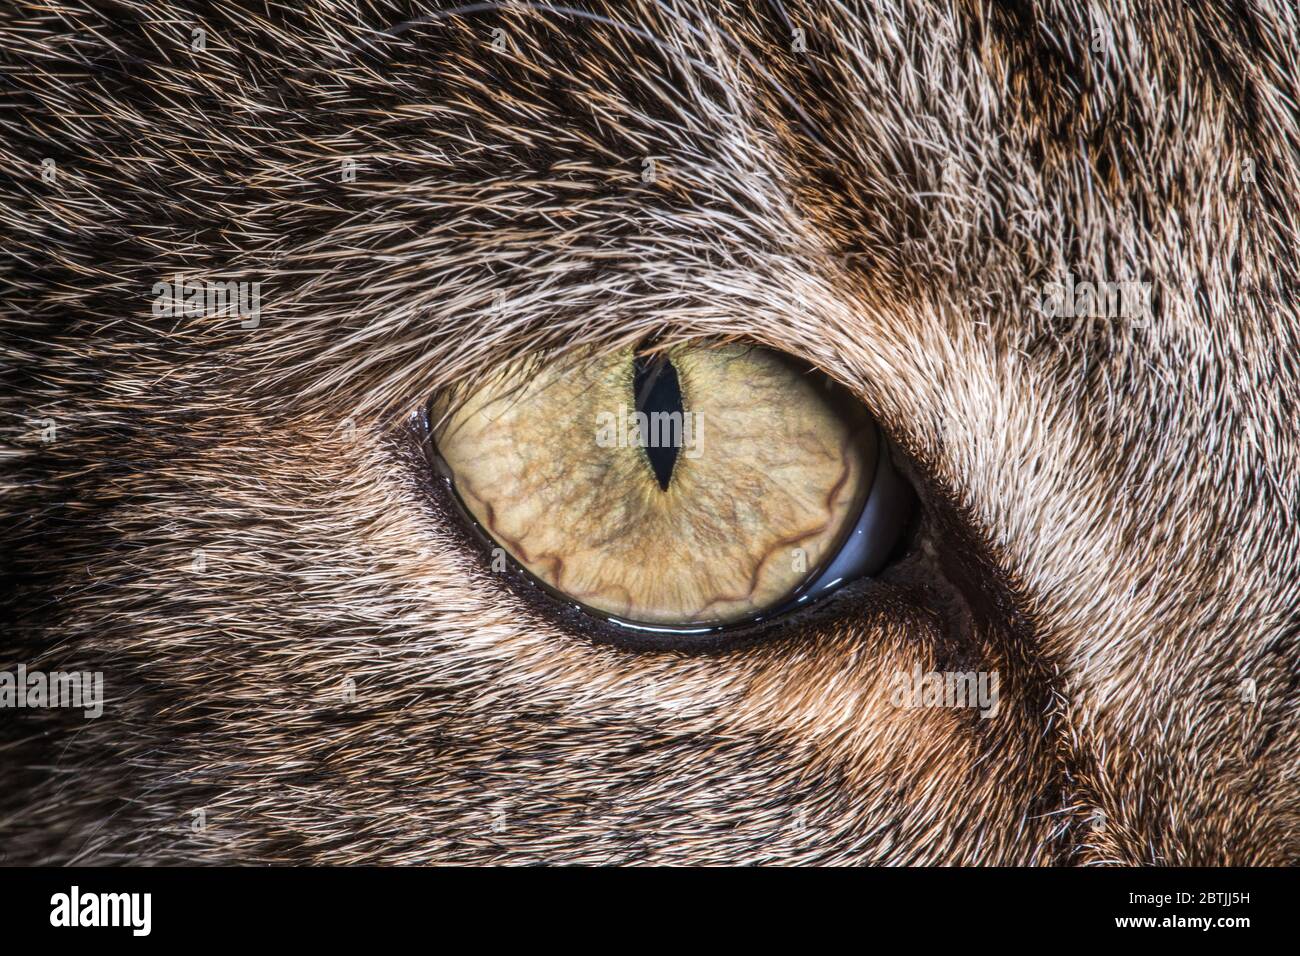 Le chat Felis Catus espèces de petits mammifères carnivores. Gros plan sur la macro œil de chat Banque D'Images